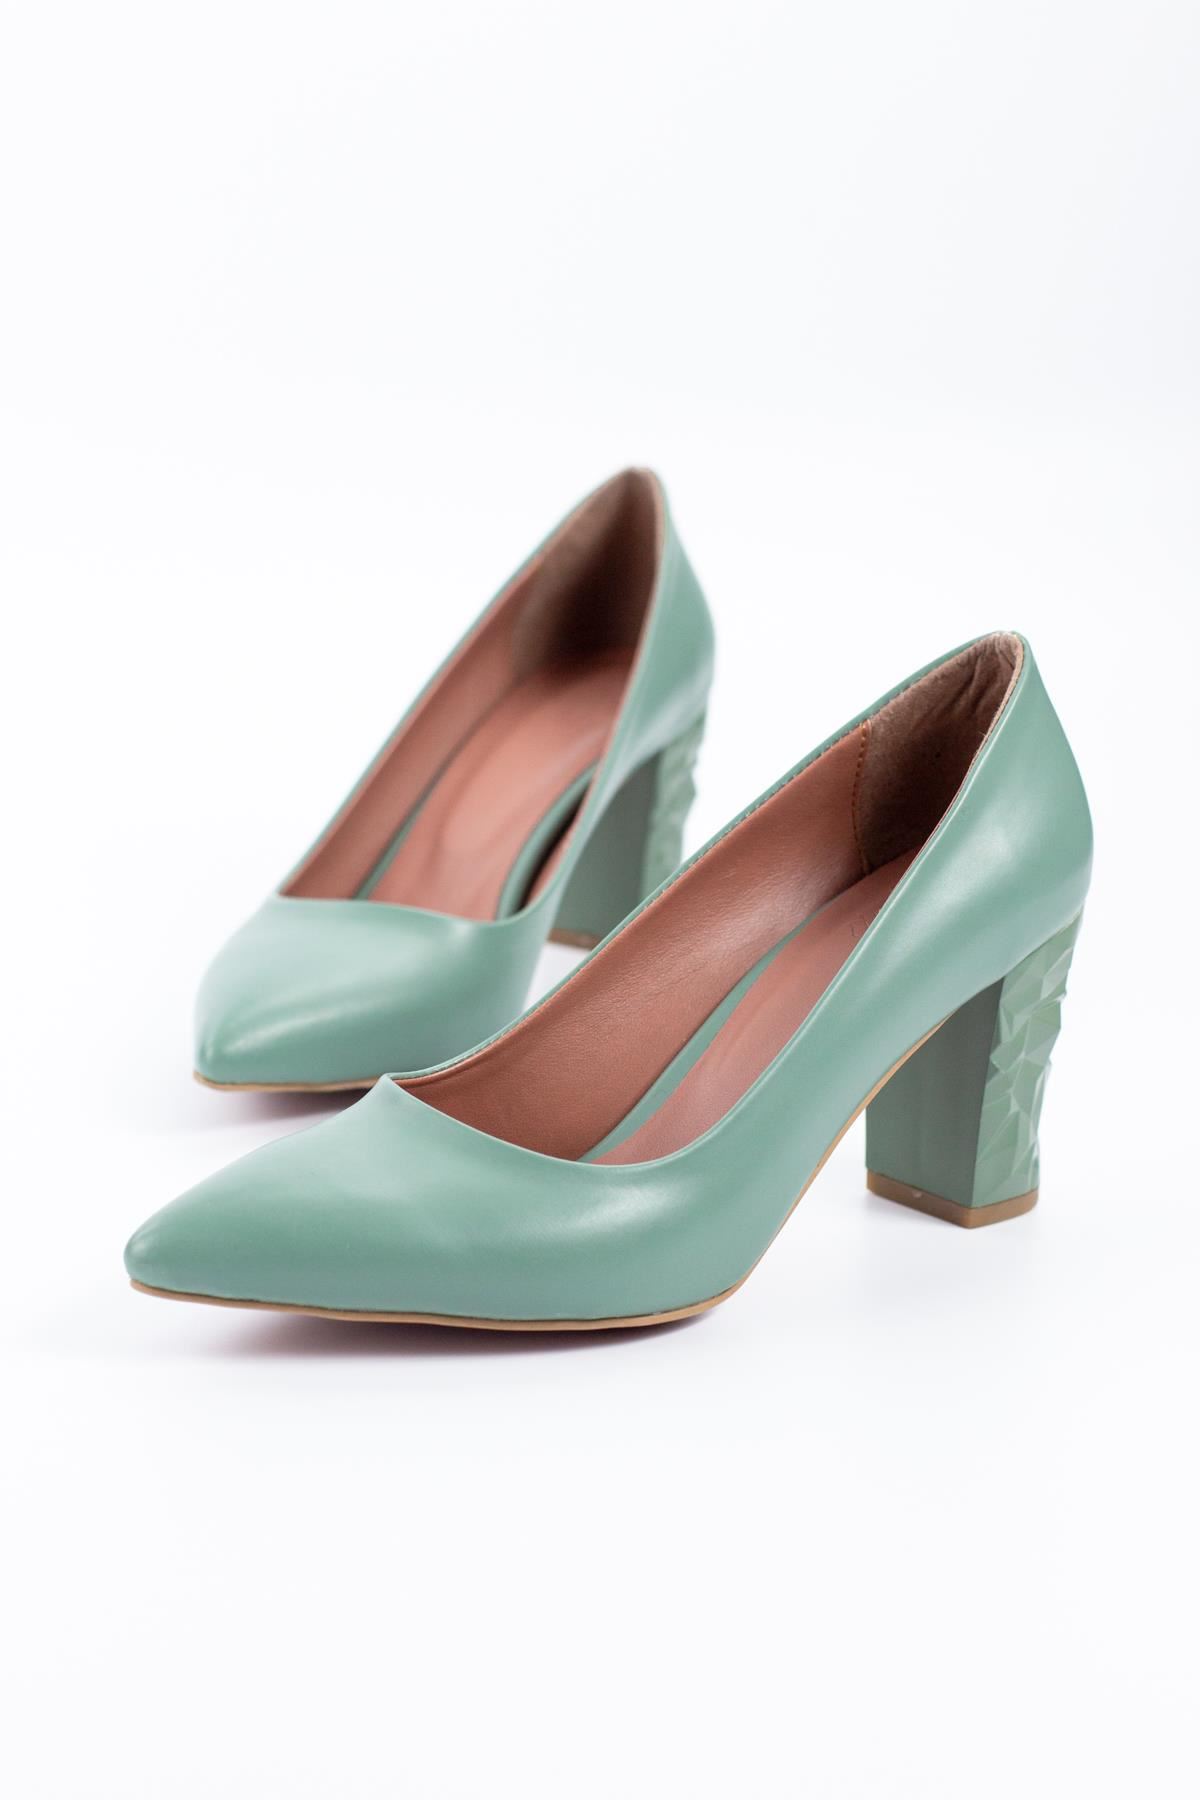 Cruchy Ökçe Detaylı Kadın Topuklu Ayakkabı Yeşil Cilt